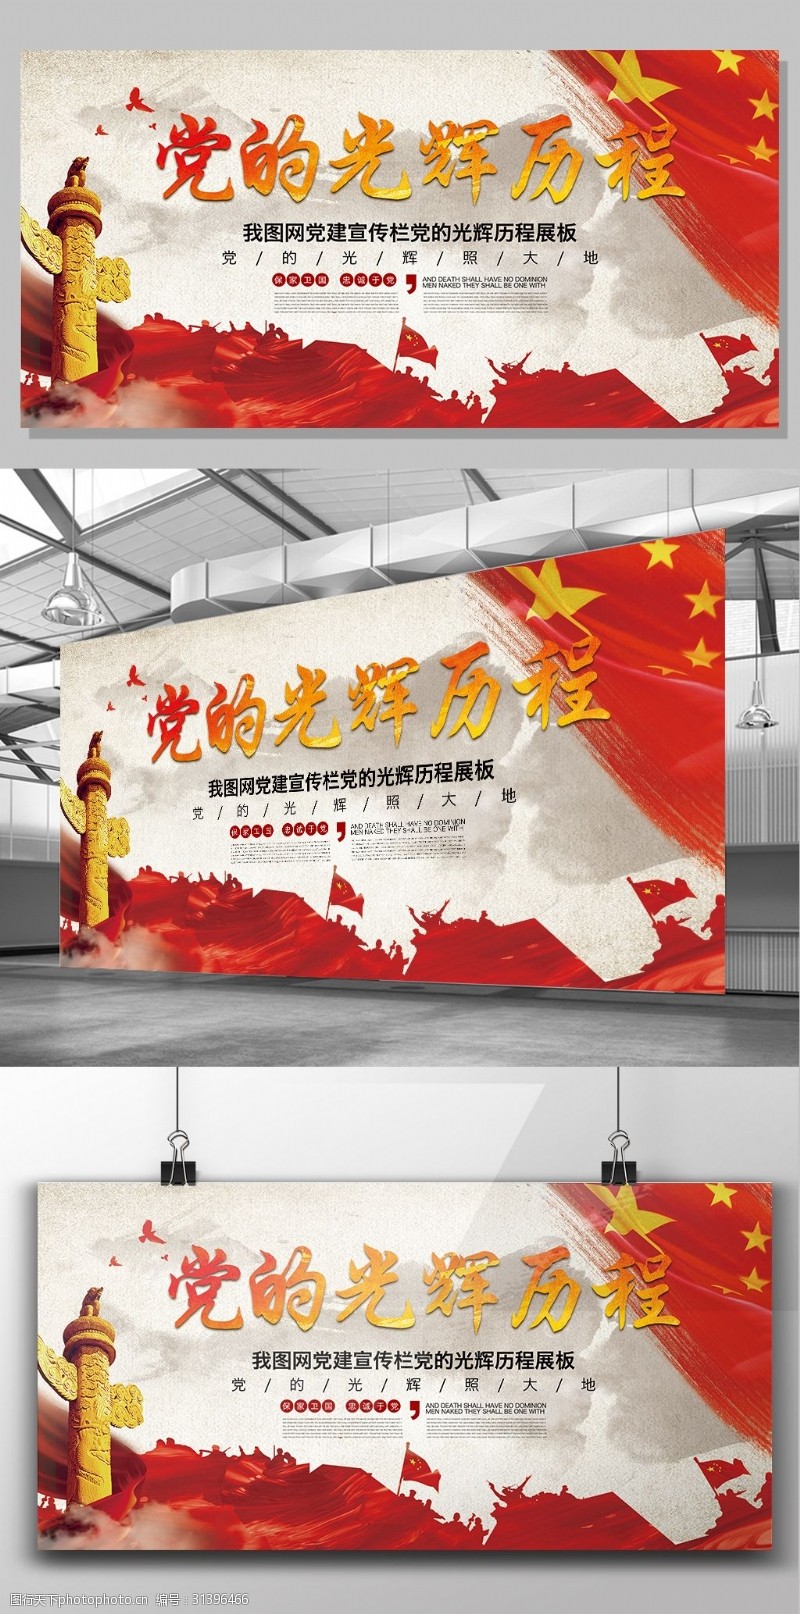 保建五星红旗企业党建文化党的光辉历程宣传展板